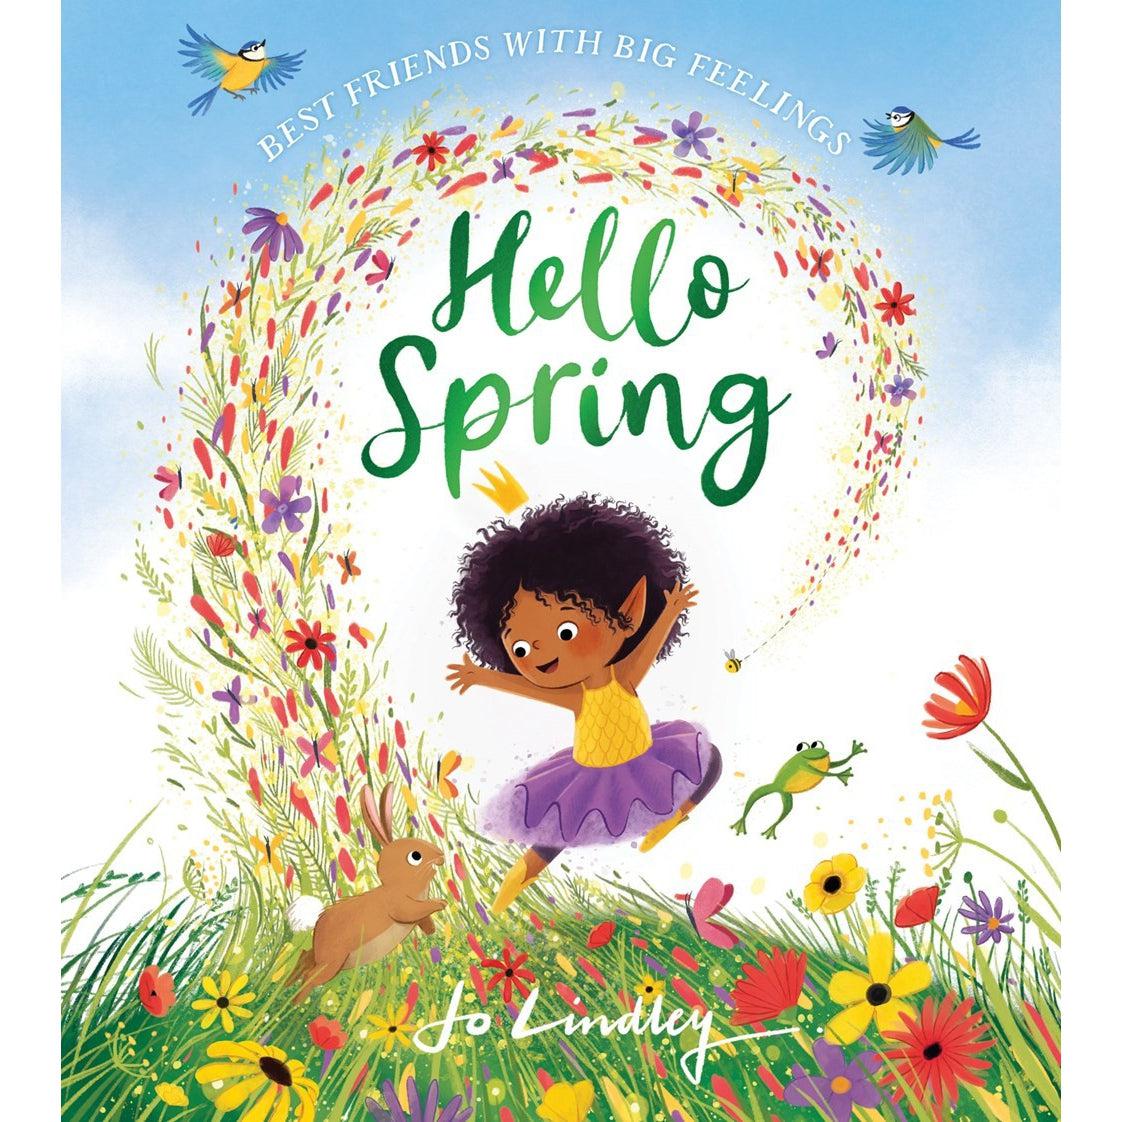 Hello Spring : A Little Seasons Story (Best Friends With Big Feelings) - Jo Lindley